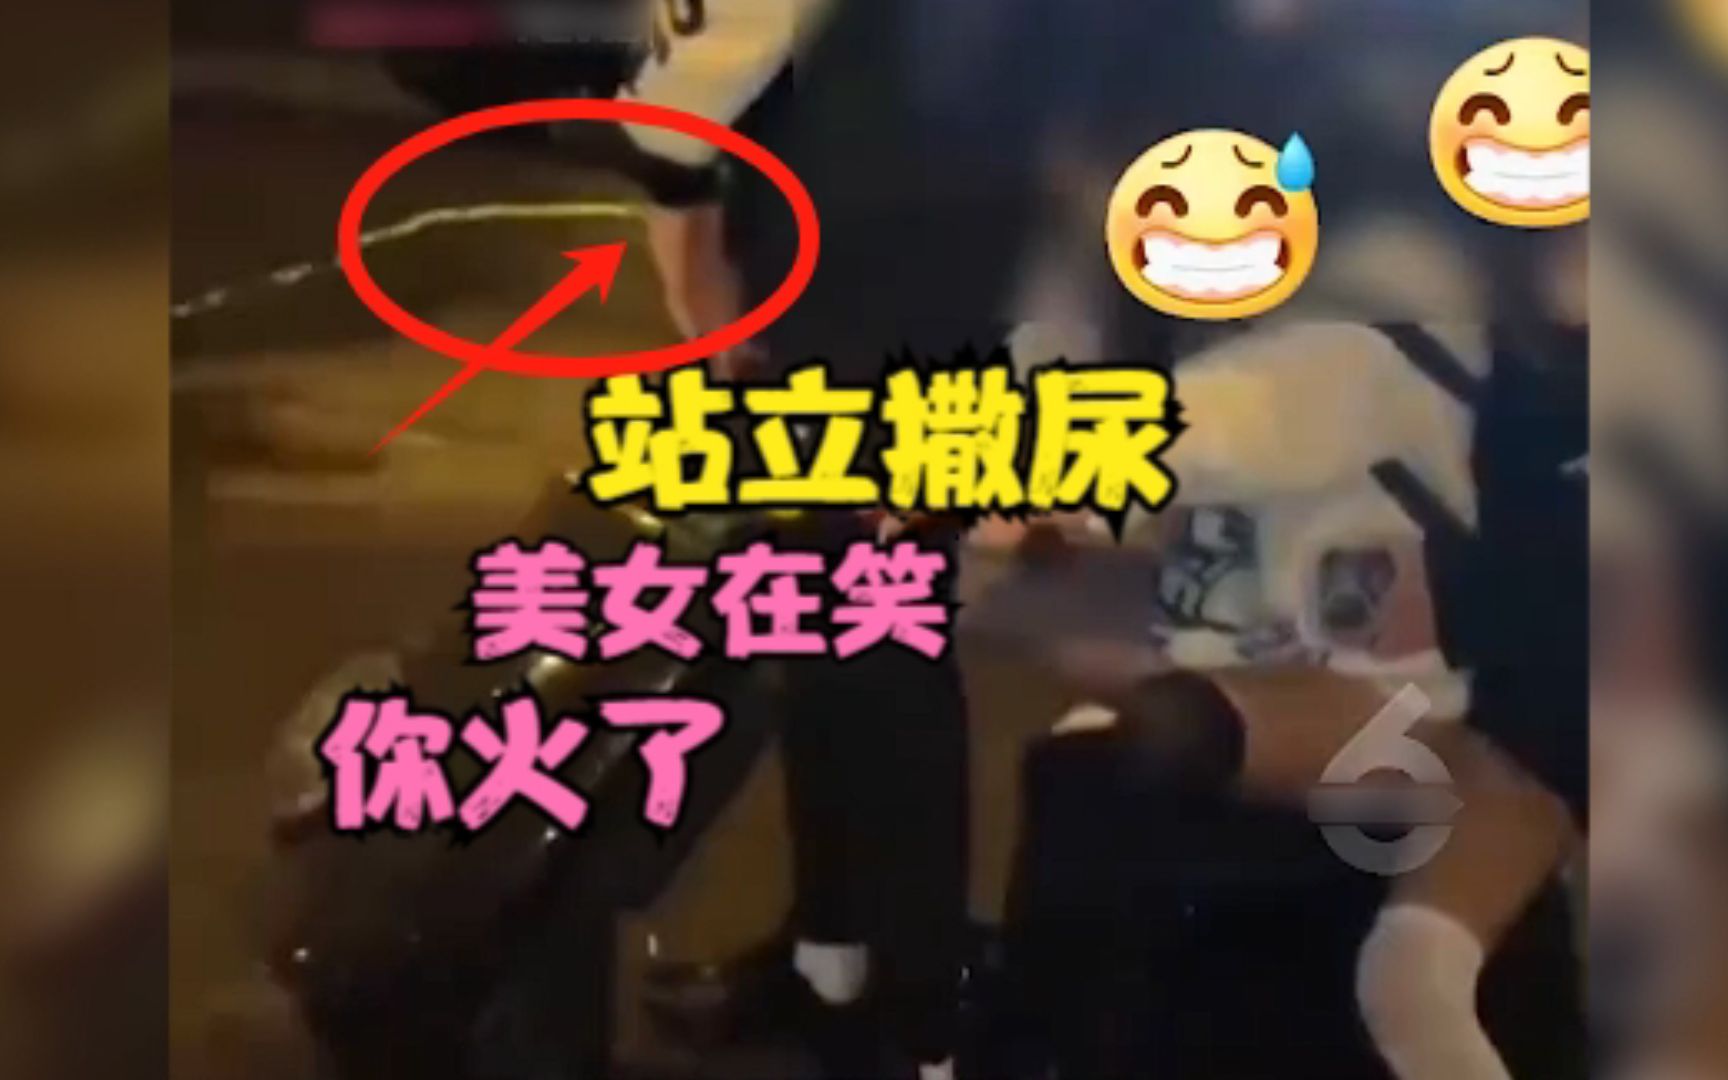 一些人在武汉长江大桥景区随地撒尿成“习惯” - 辣眼时评 - 华声论坛